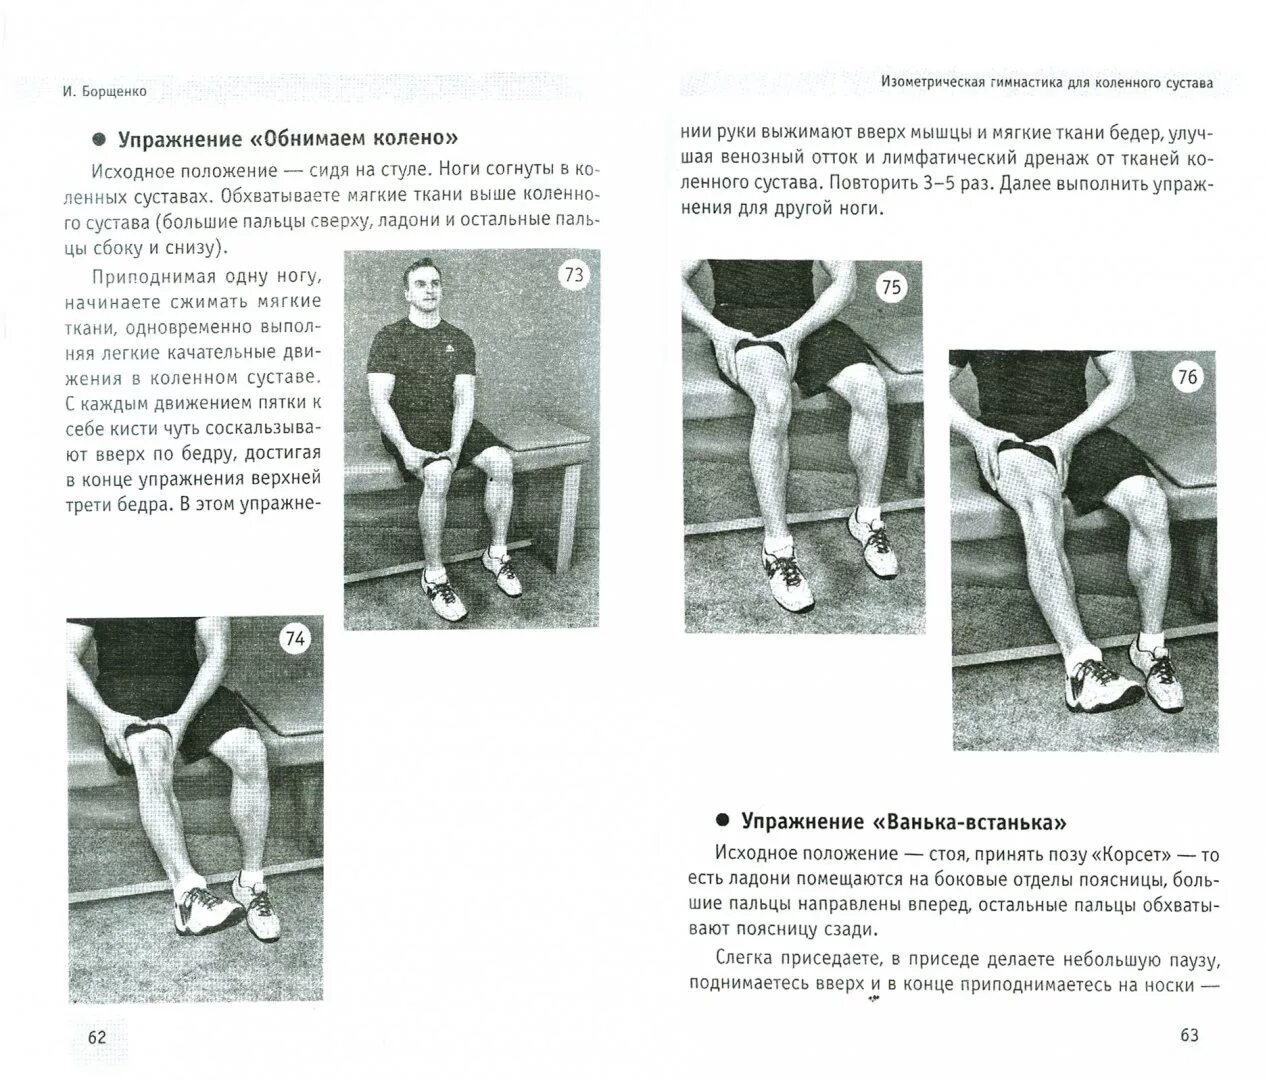 Упражнения по Борщенко для коленного сустава. Изометрическая гимнастика для коленного сустава. Изометрическая гимнастика для тазобедренного сустава. Изометрические упражнения для коленного сустава.